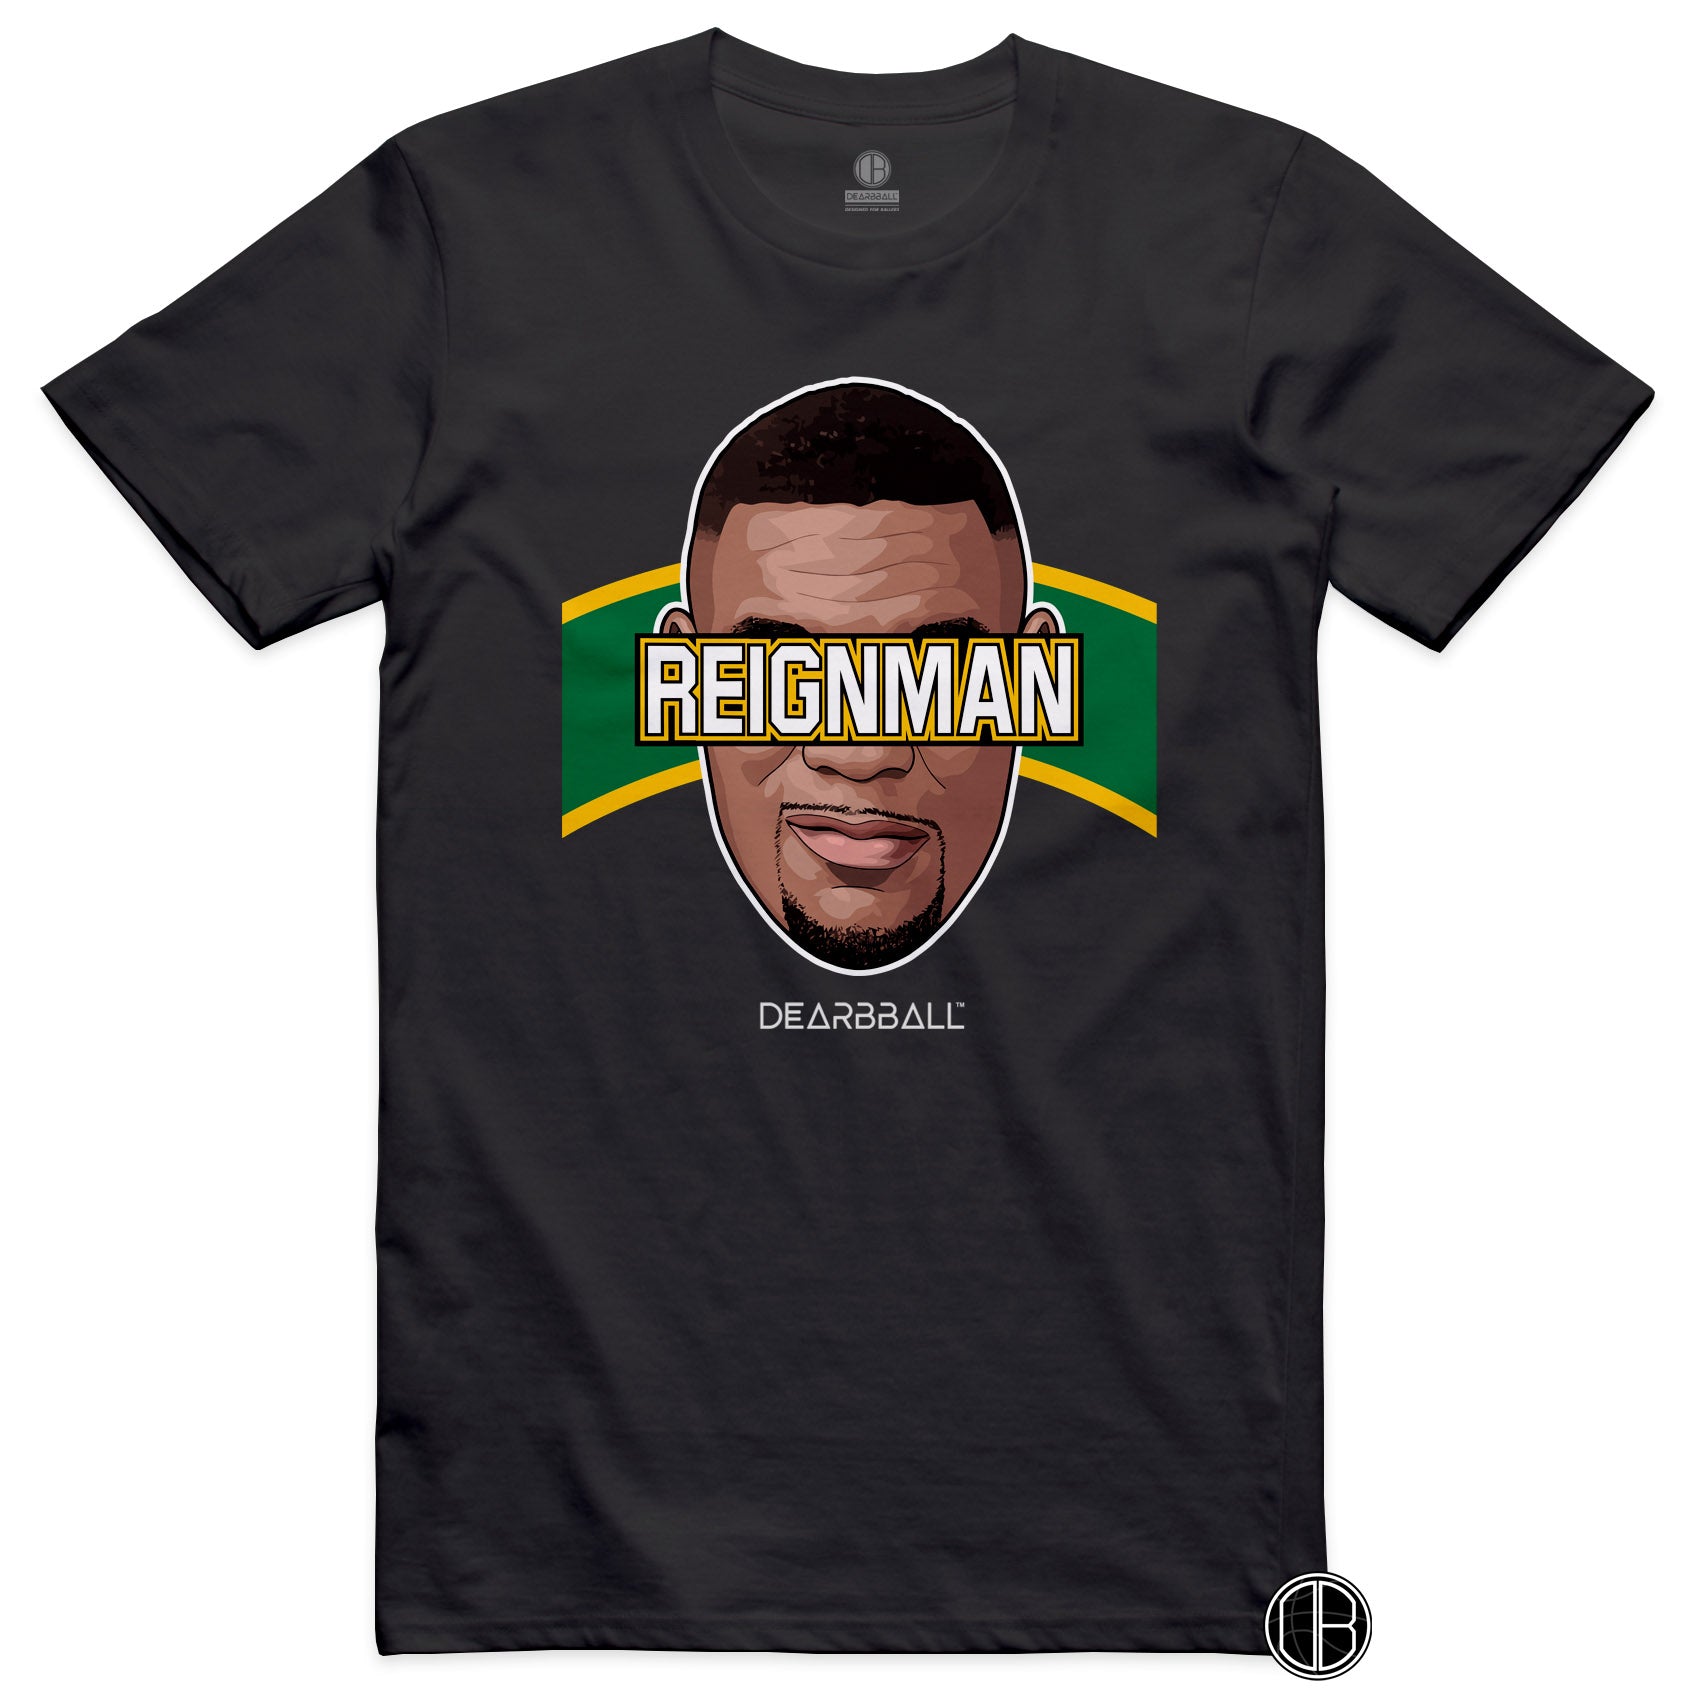 DearBBall T-Shirt - ReignMan Seattle Edition